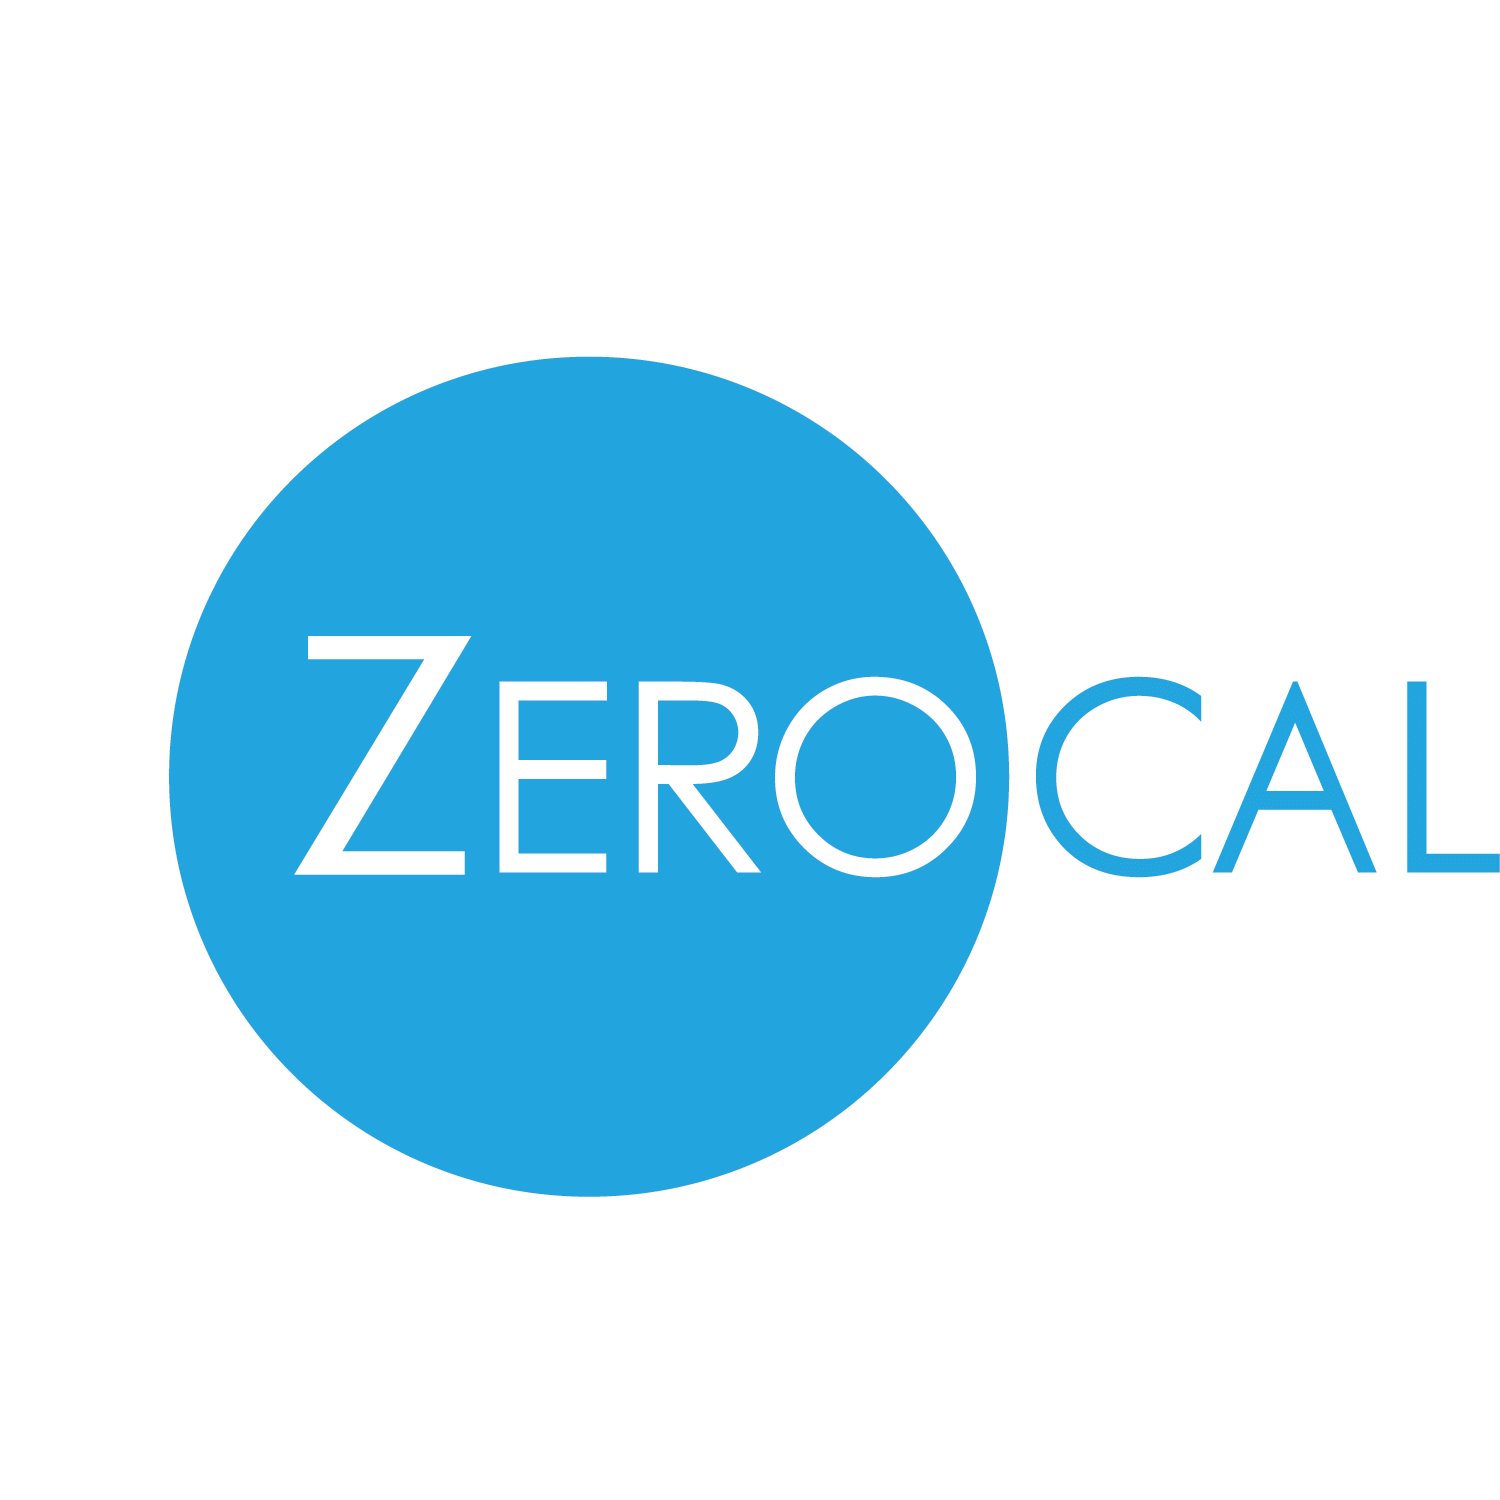 Square - ZeroCal